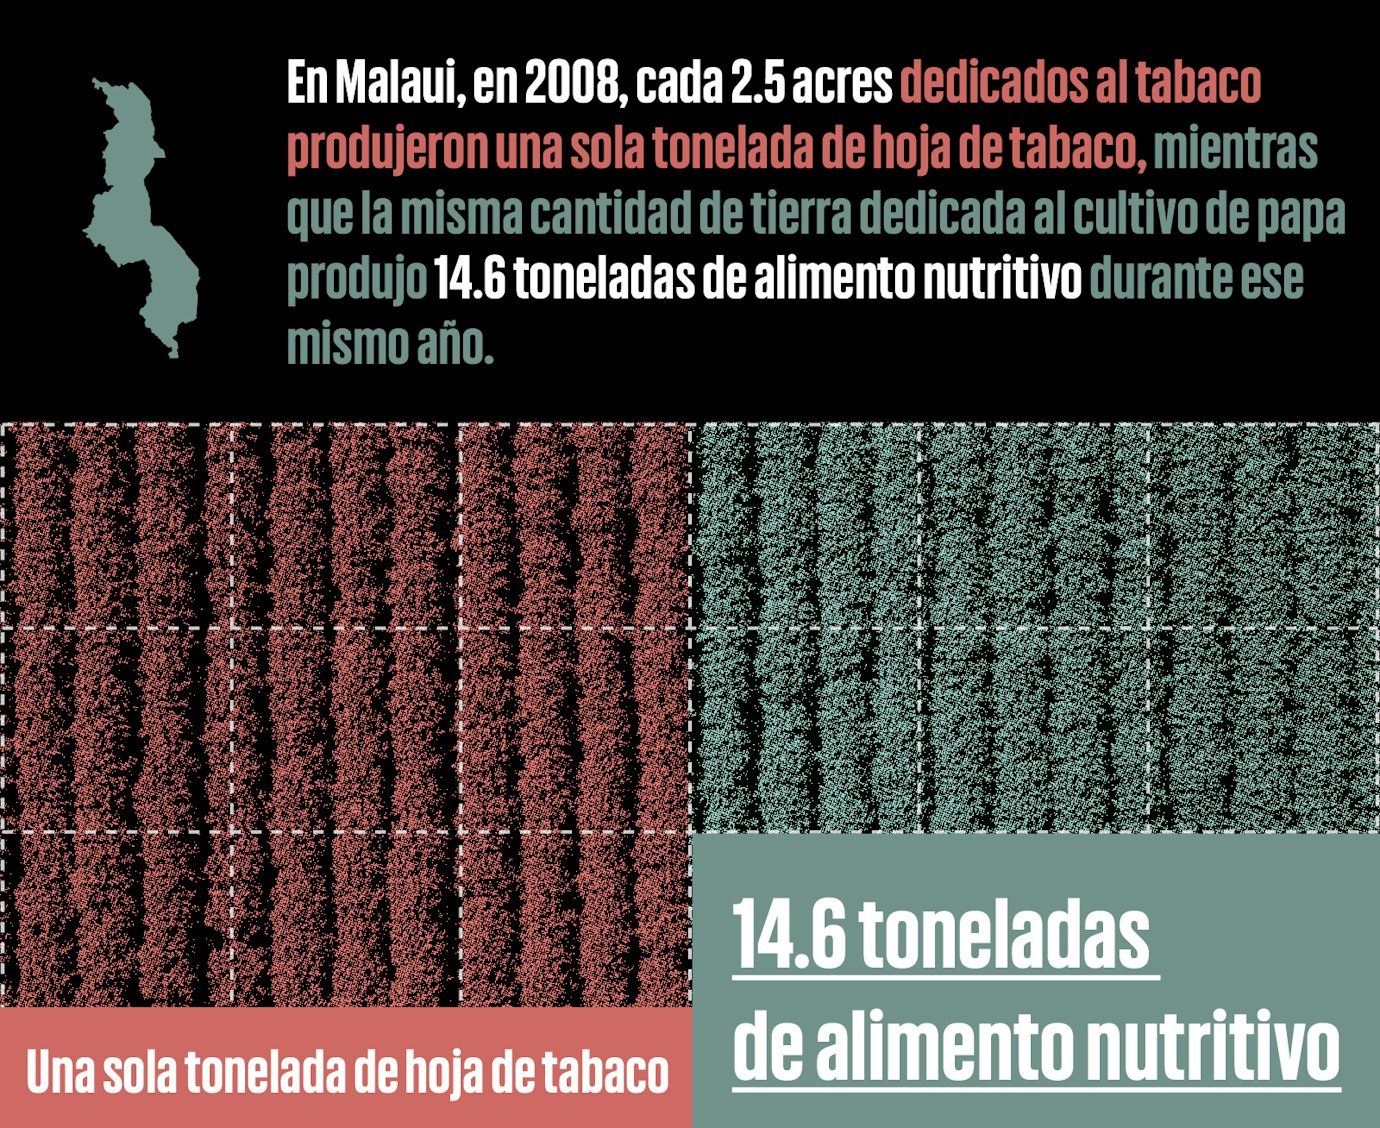 Infografía comparando el uso de terreno para el cultivo del tabaco a el cultivo de papa